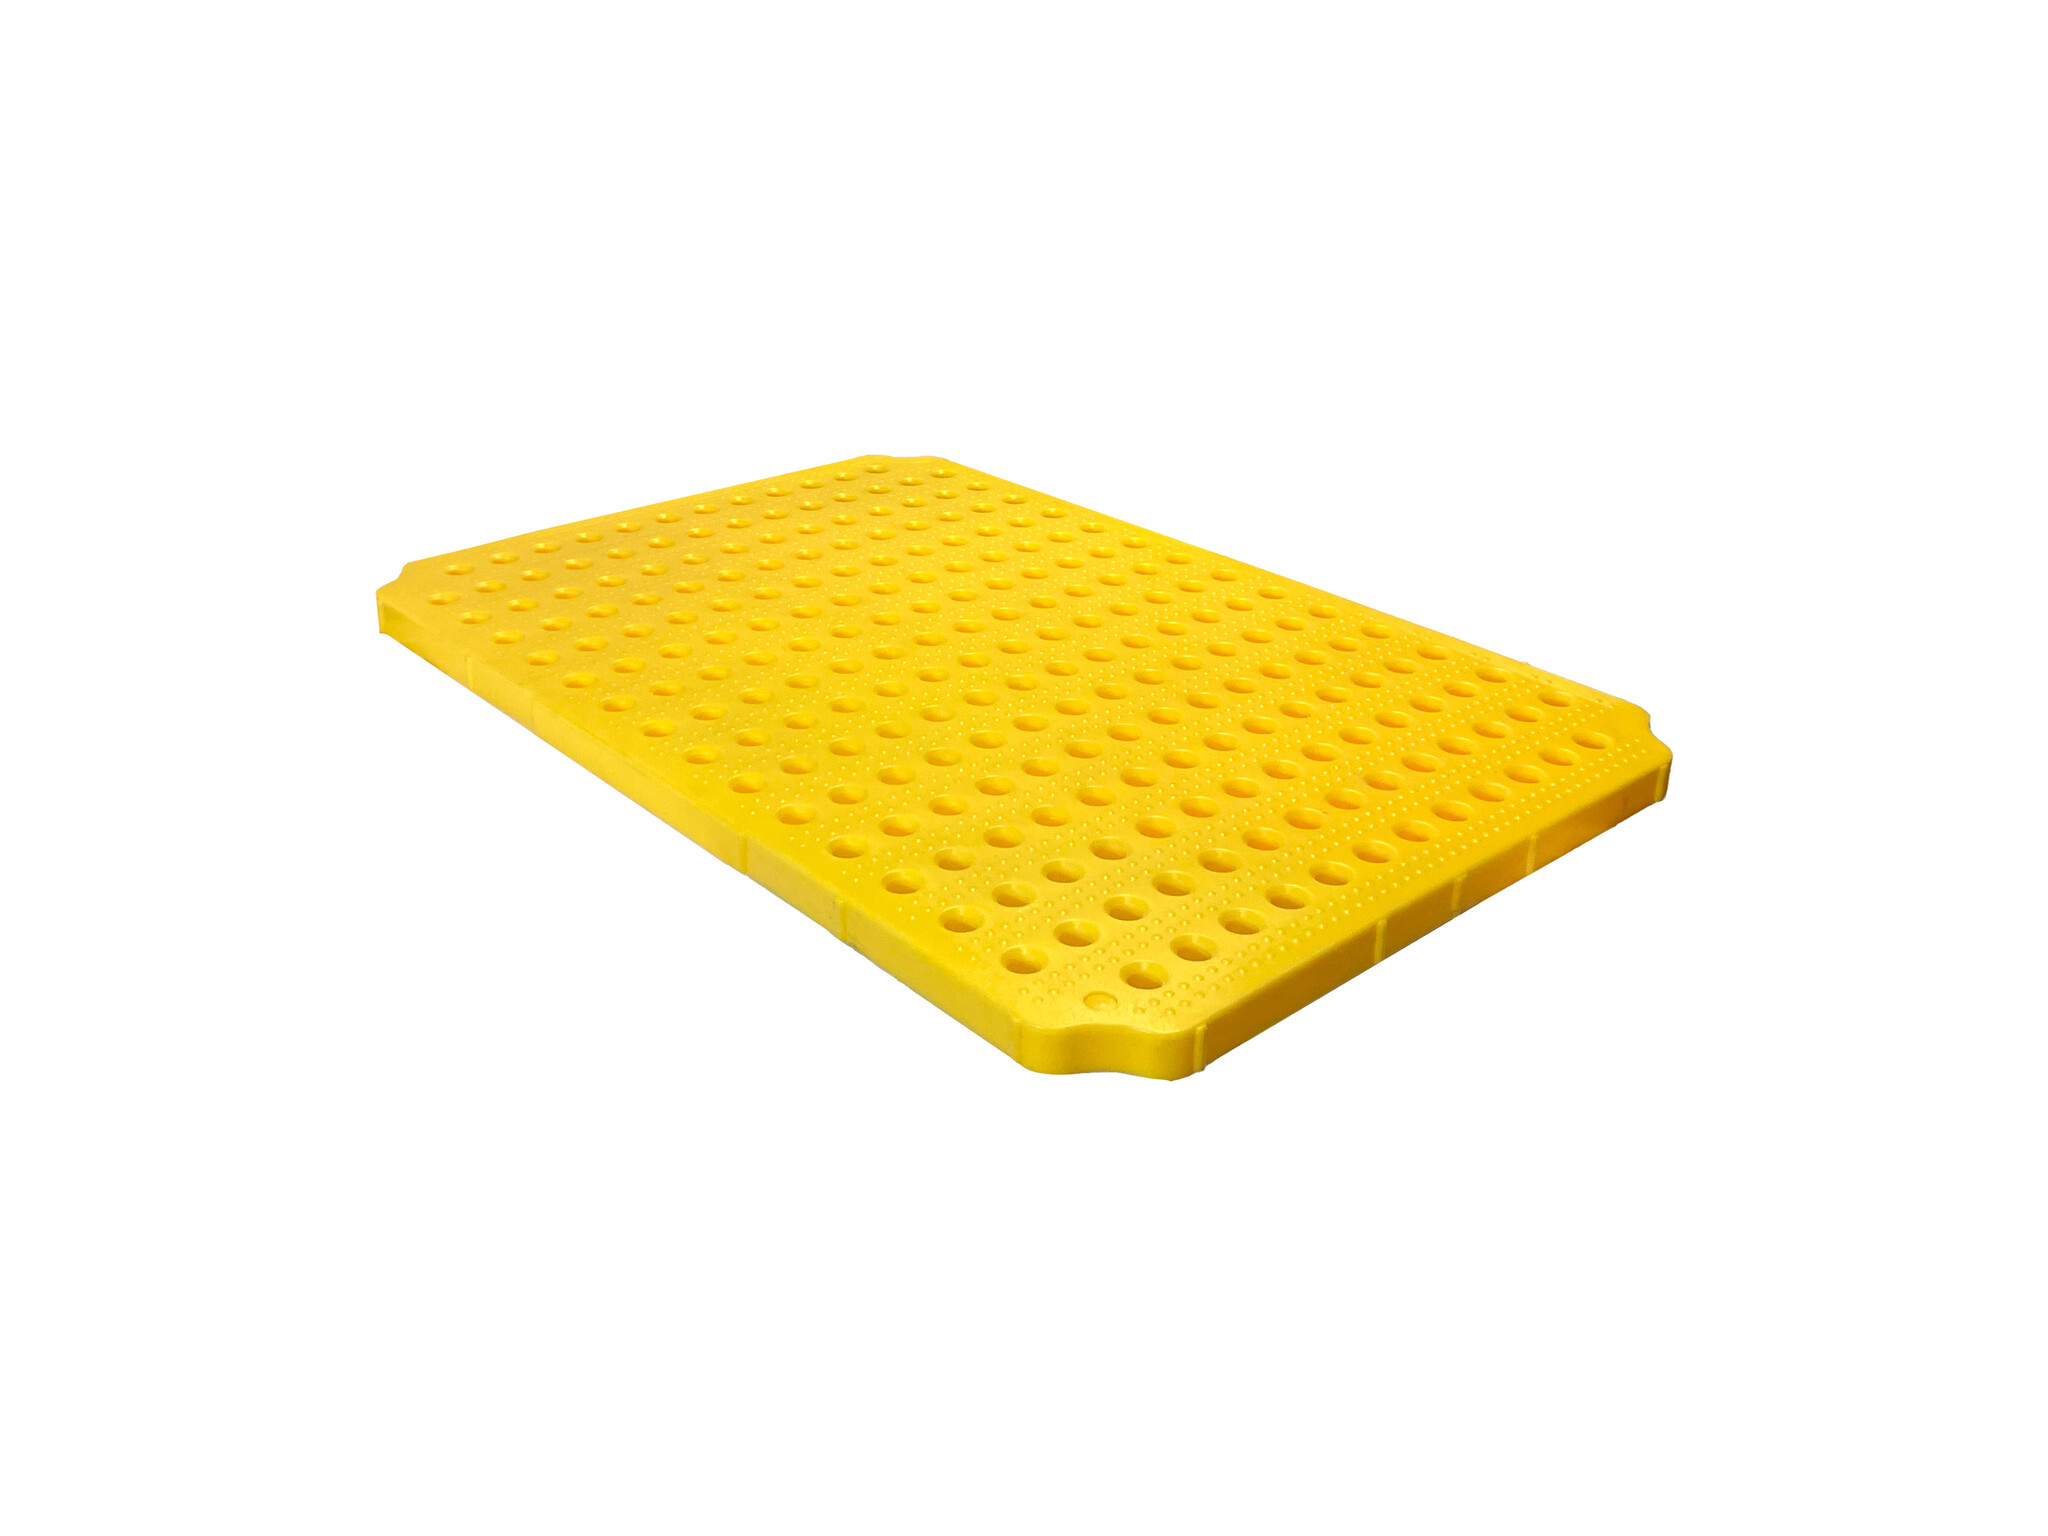 Drip Tray Plastic Grid - 1190x780x40mm